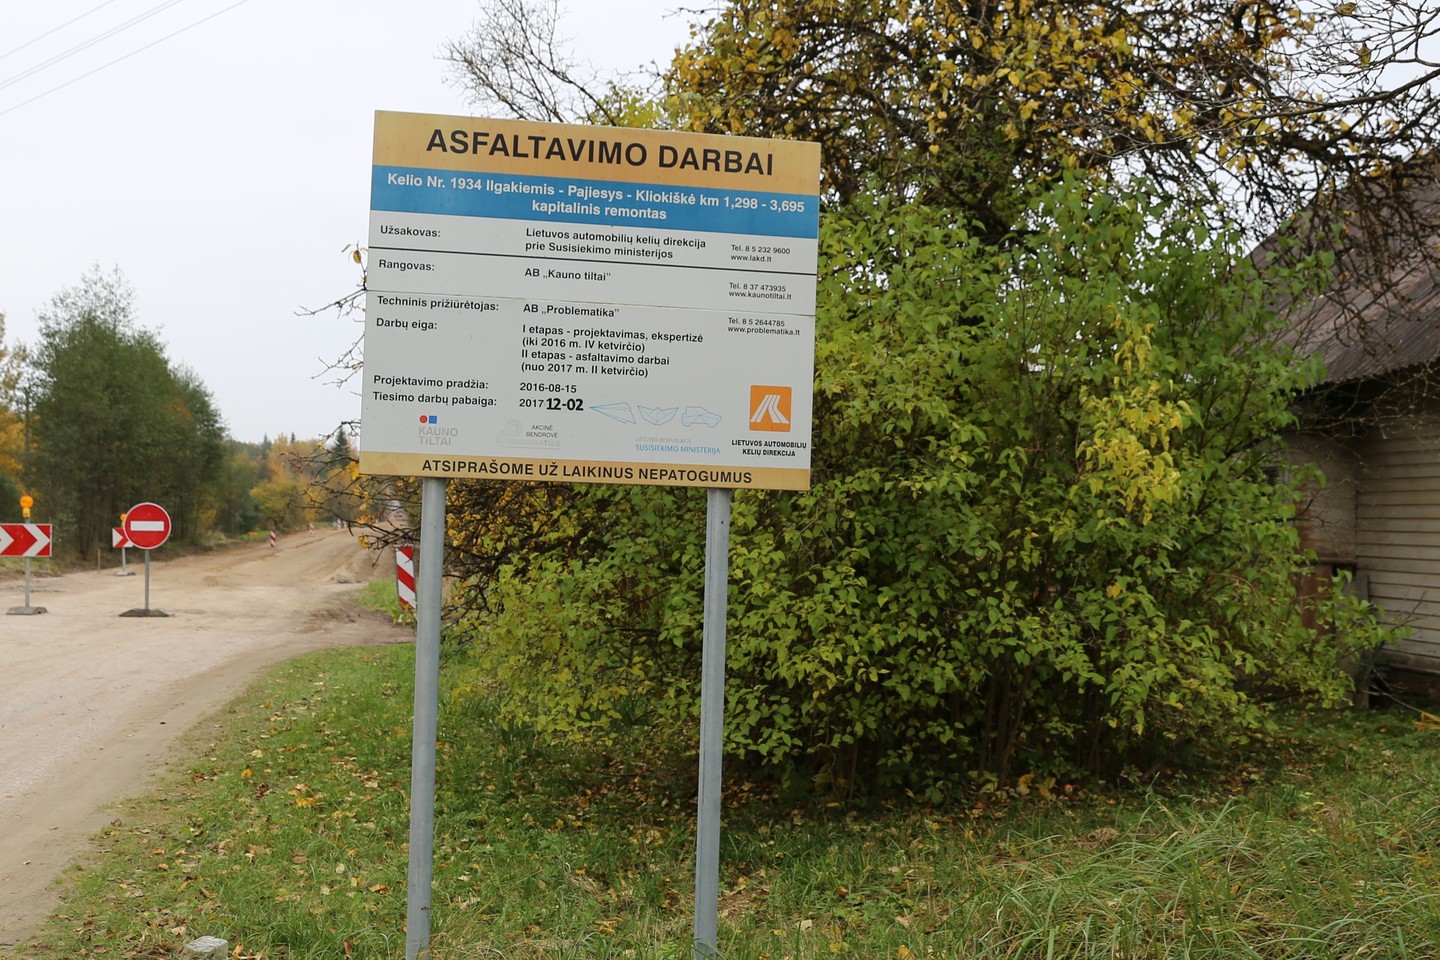  Kauno rajone šiais metais bus padengti asfaltu du žvyrkeliai Batniavos ir Garliavos apylinkių seniūnijose. <br> Kauno rajono savivaldybės nuotr.